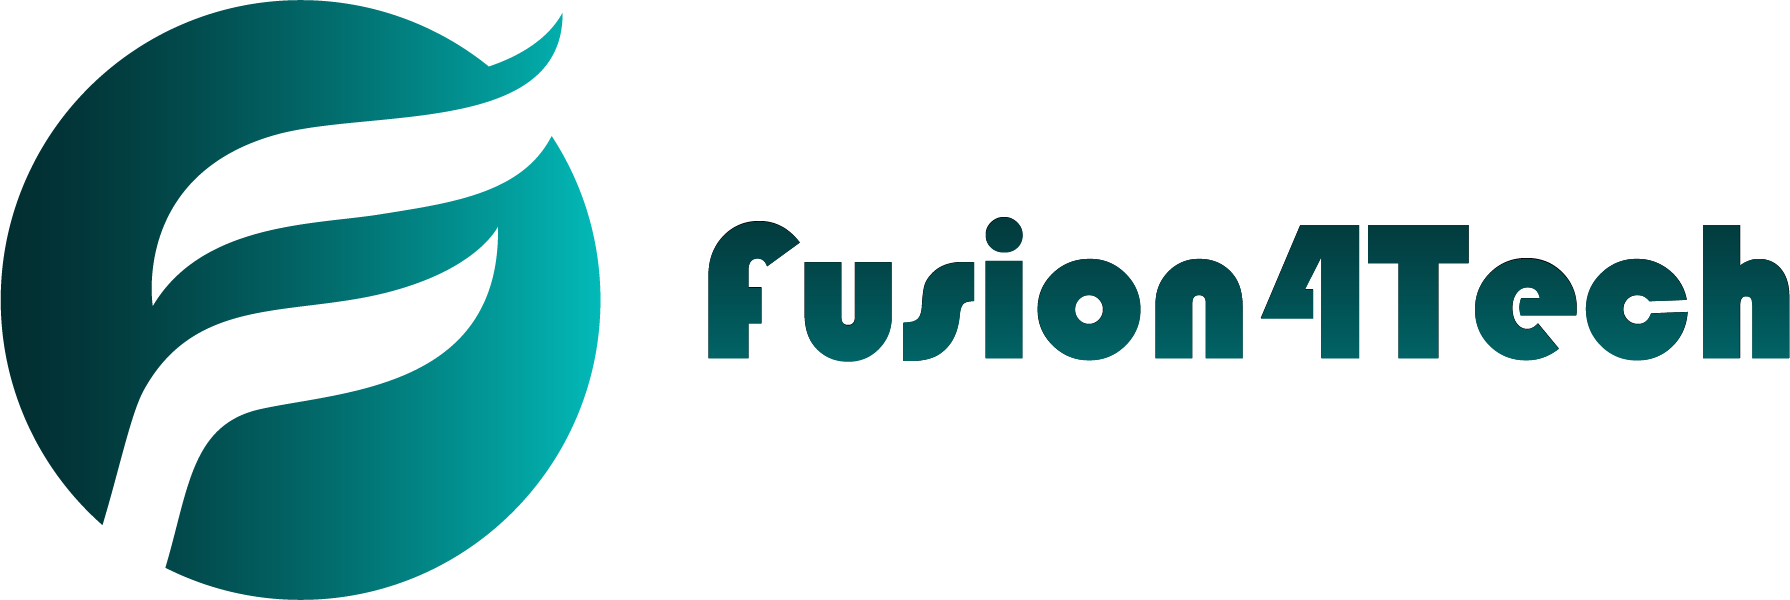 Fusion4Tech